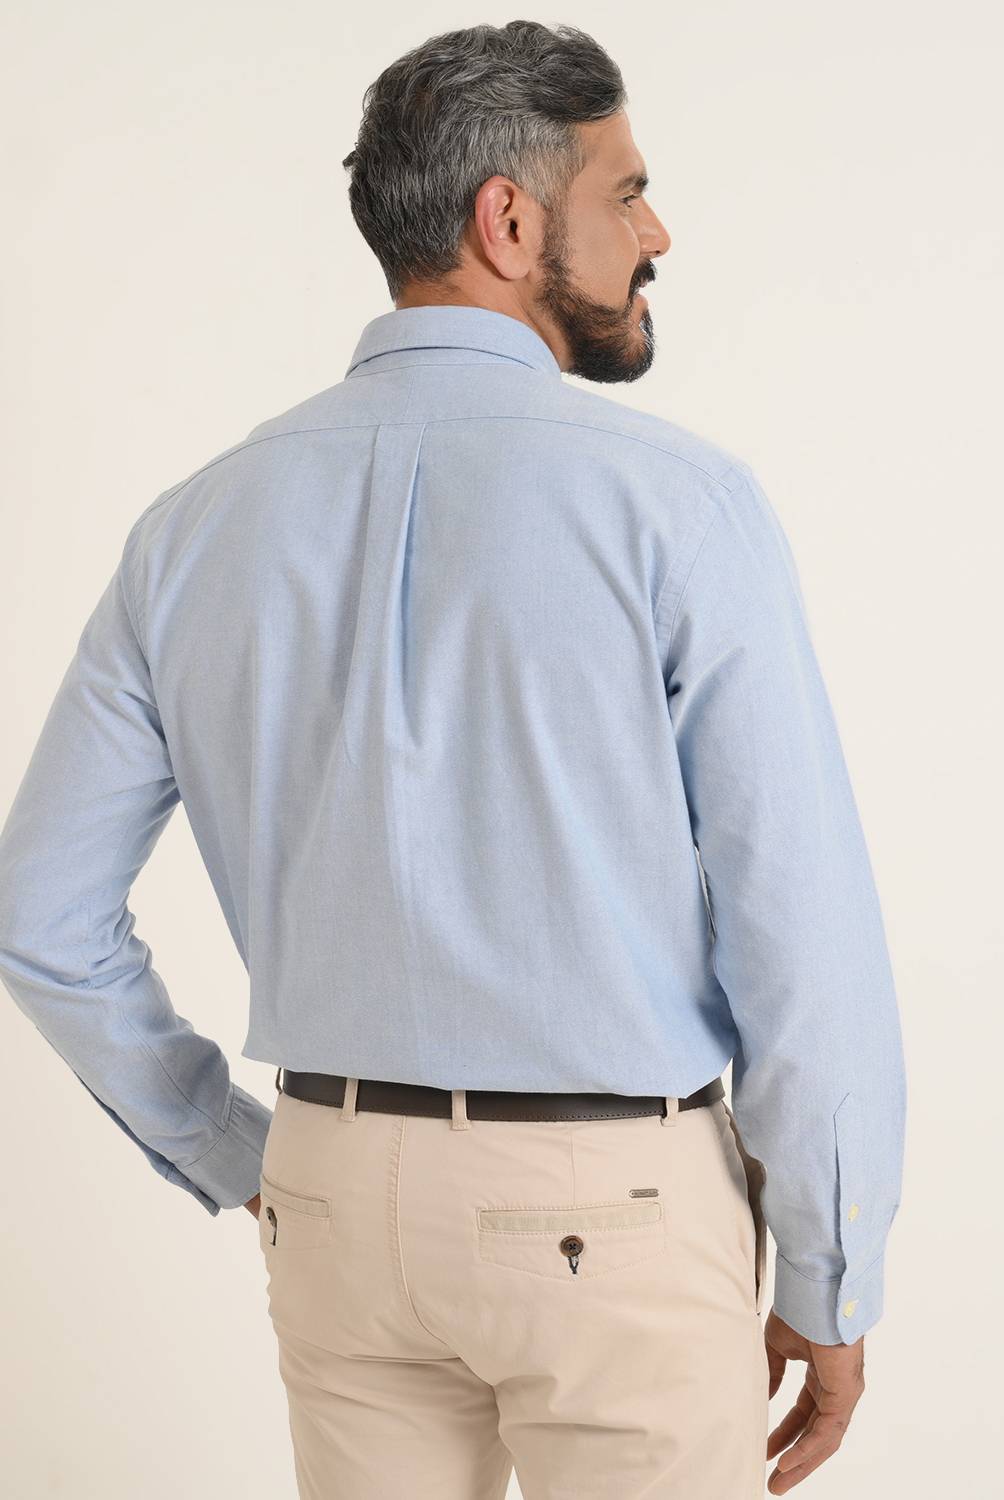 Camisa casual Polo Ralph Lauren de algodón manga larga para hombre